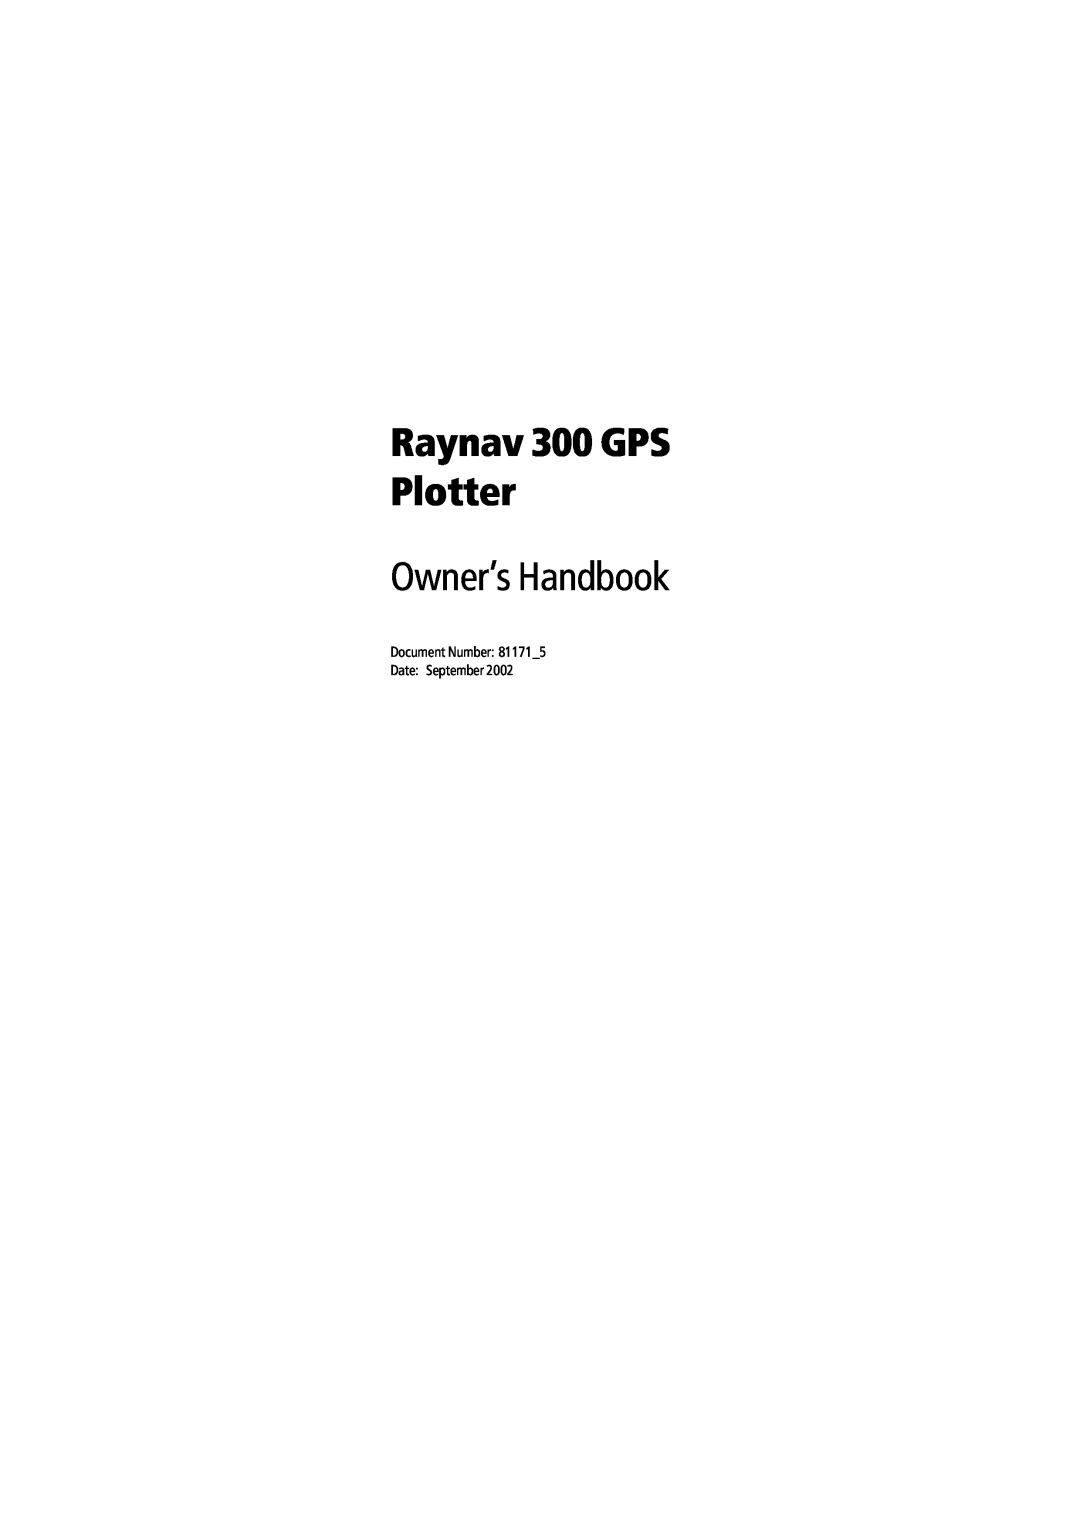 Raymarine manual Raynav 300 GPS Plotter, Owner’s Handbook 